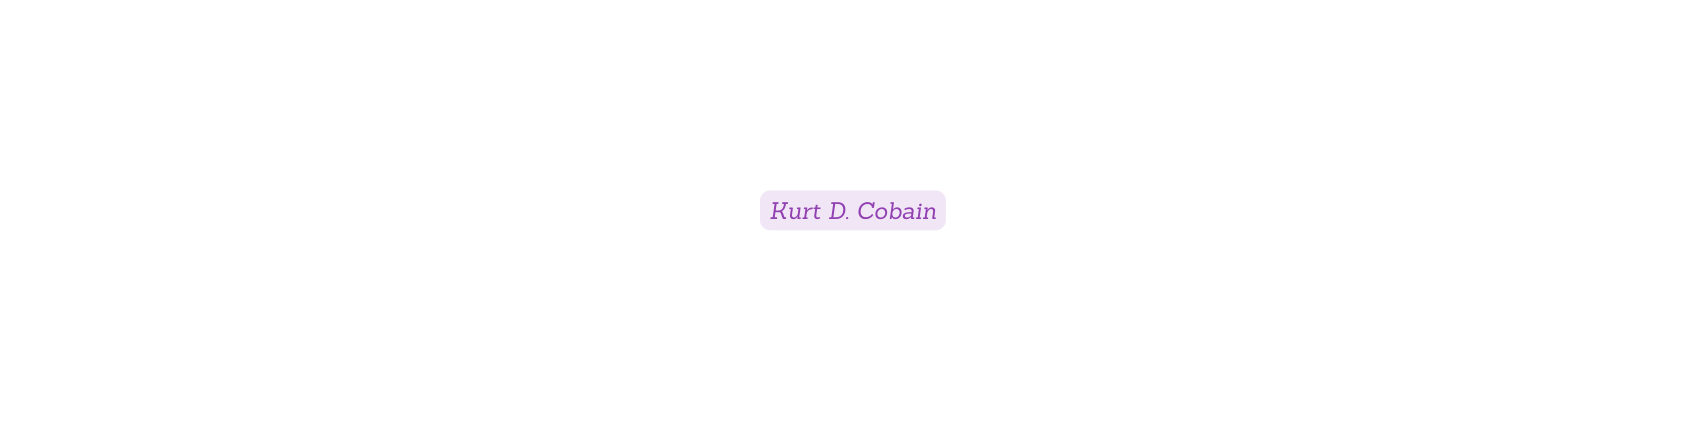 Kurt D Cobain